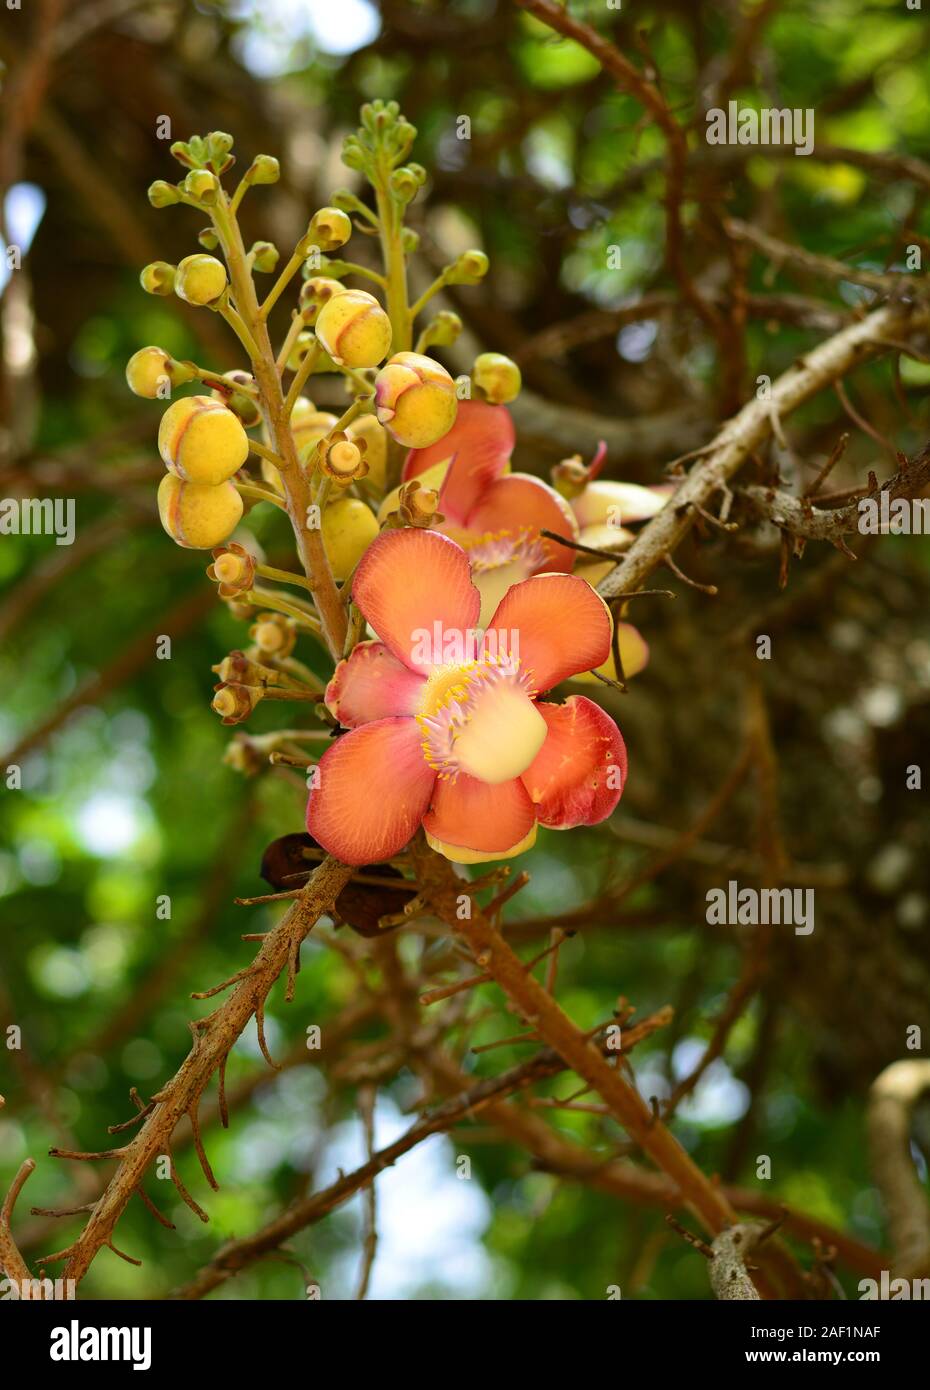 Flower of Cannonball Tree (Couroupita guianensis) at Botanical Garden, Kuala Lumpur, Malaysia Stock Photo